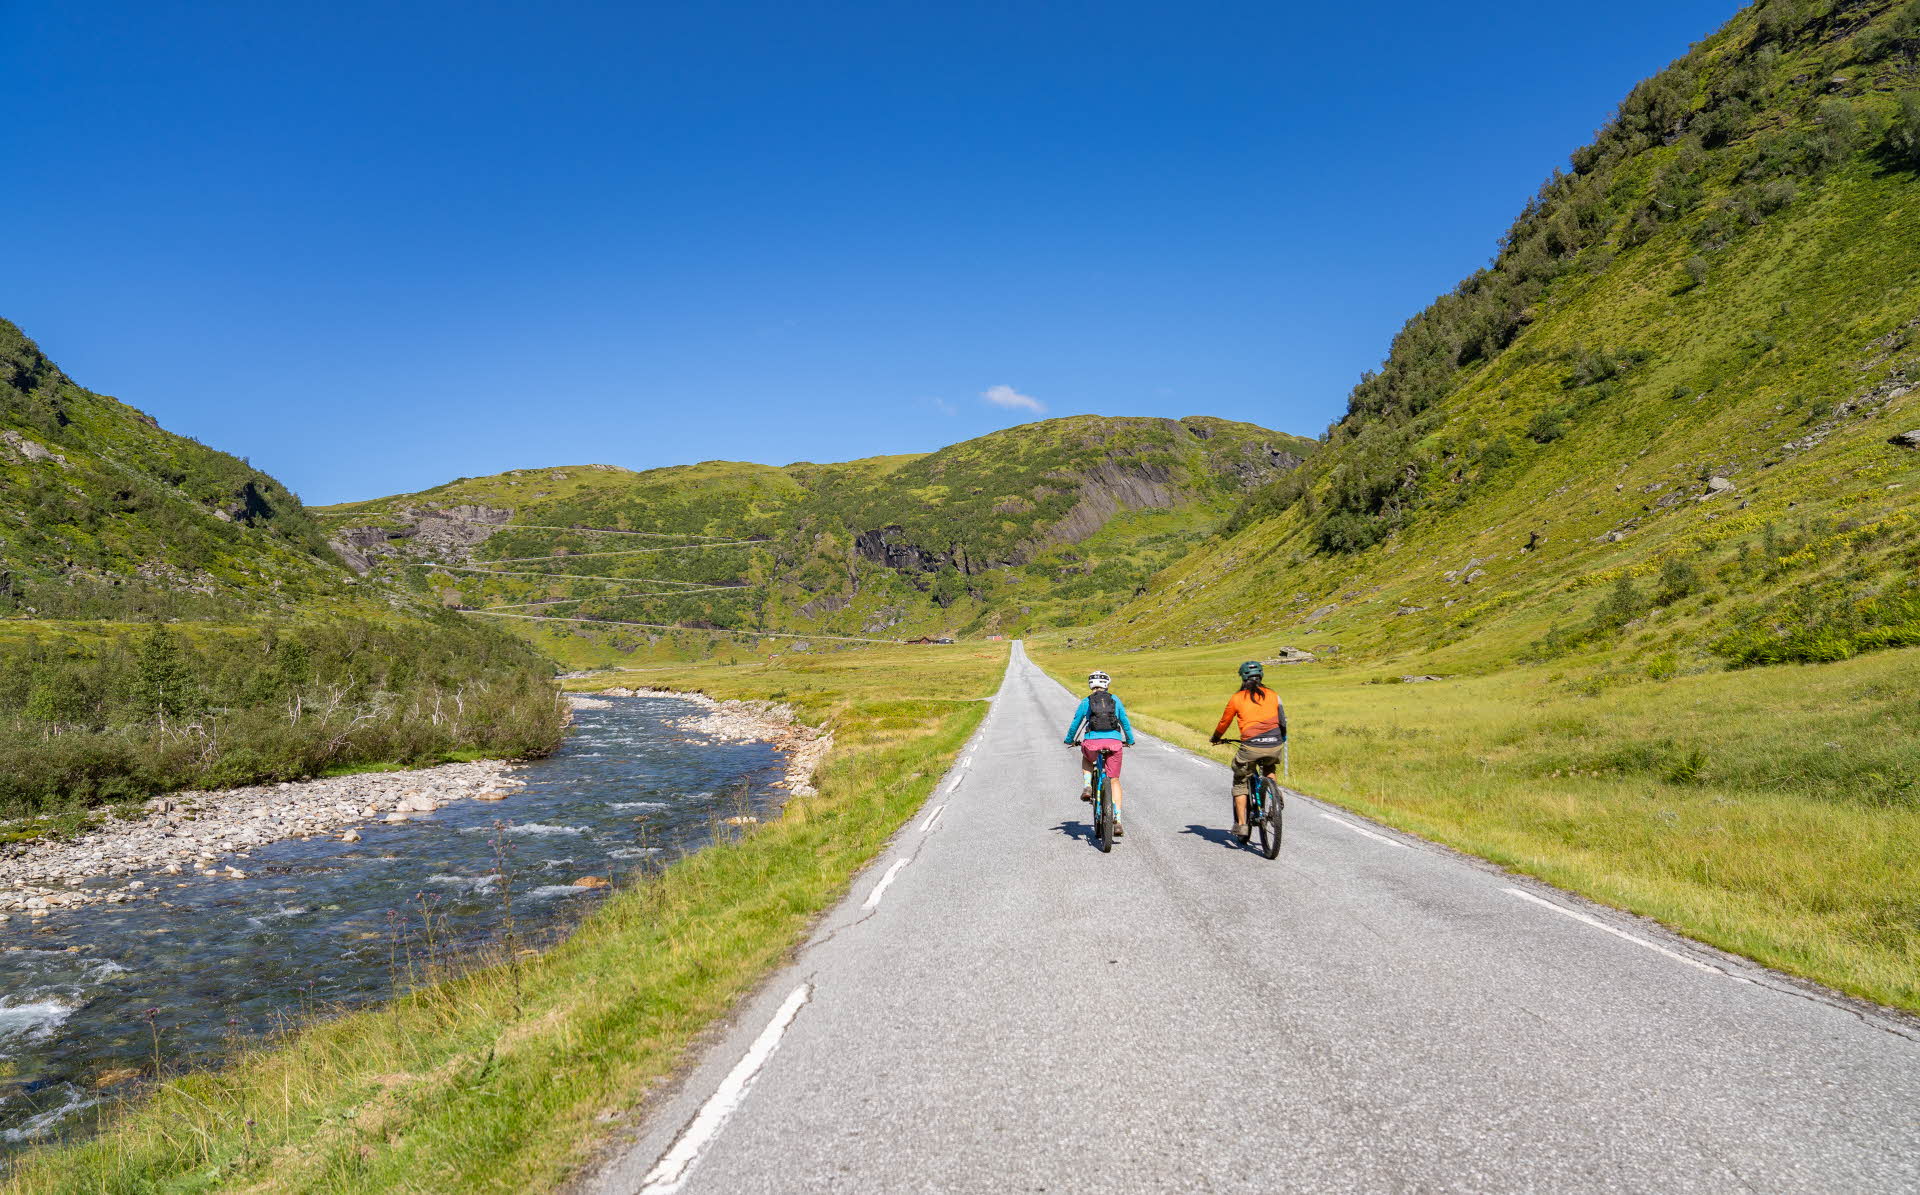 Dos ciclistas en un camino junto a un río con montañas verdes y escarpadas alrededor.